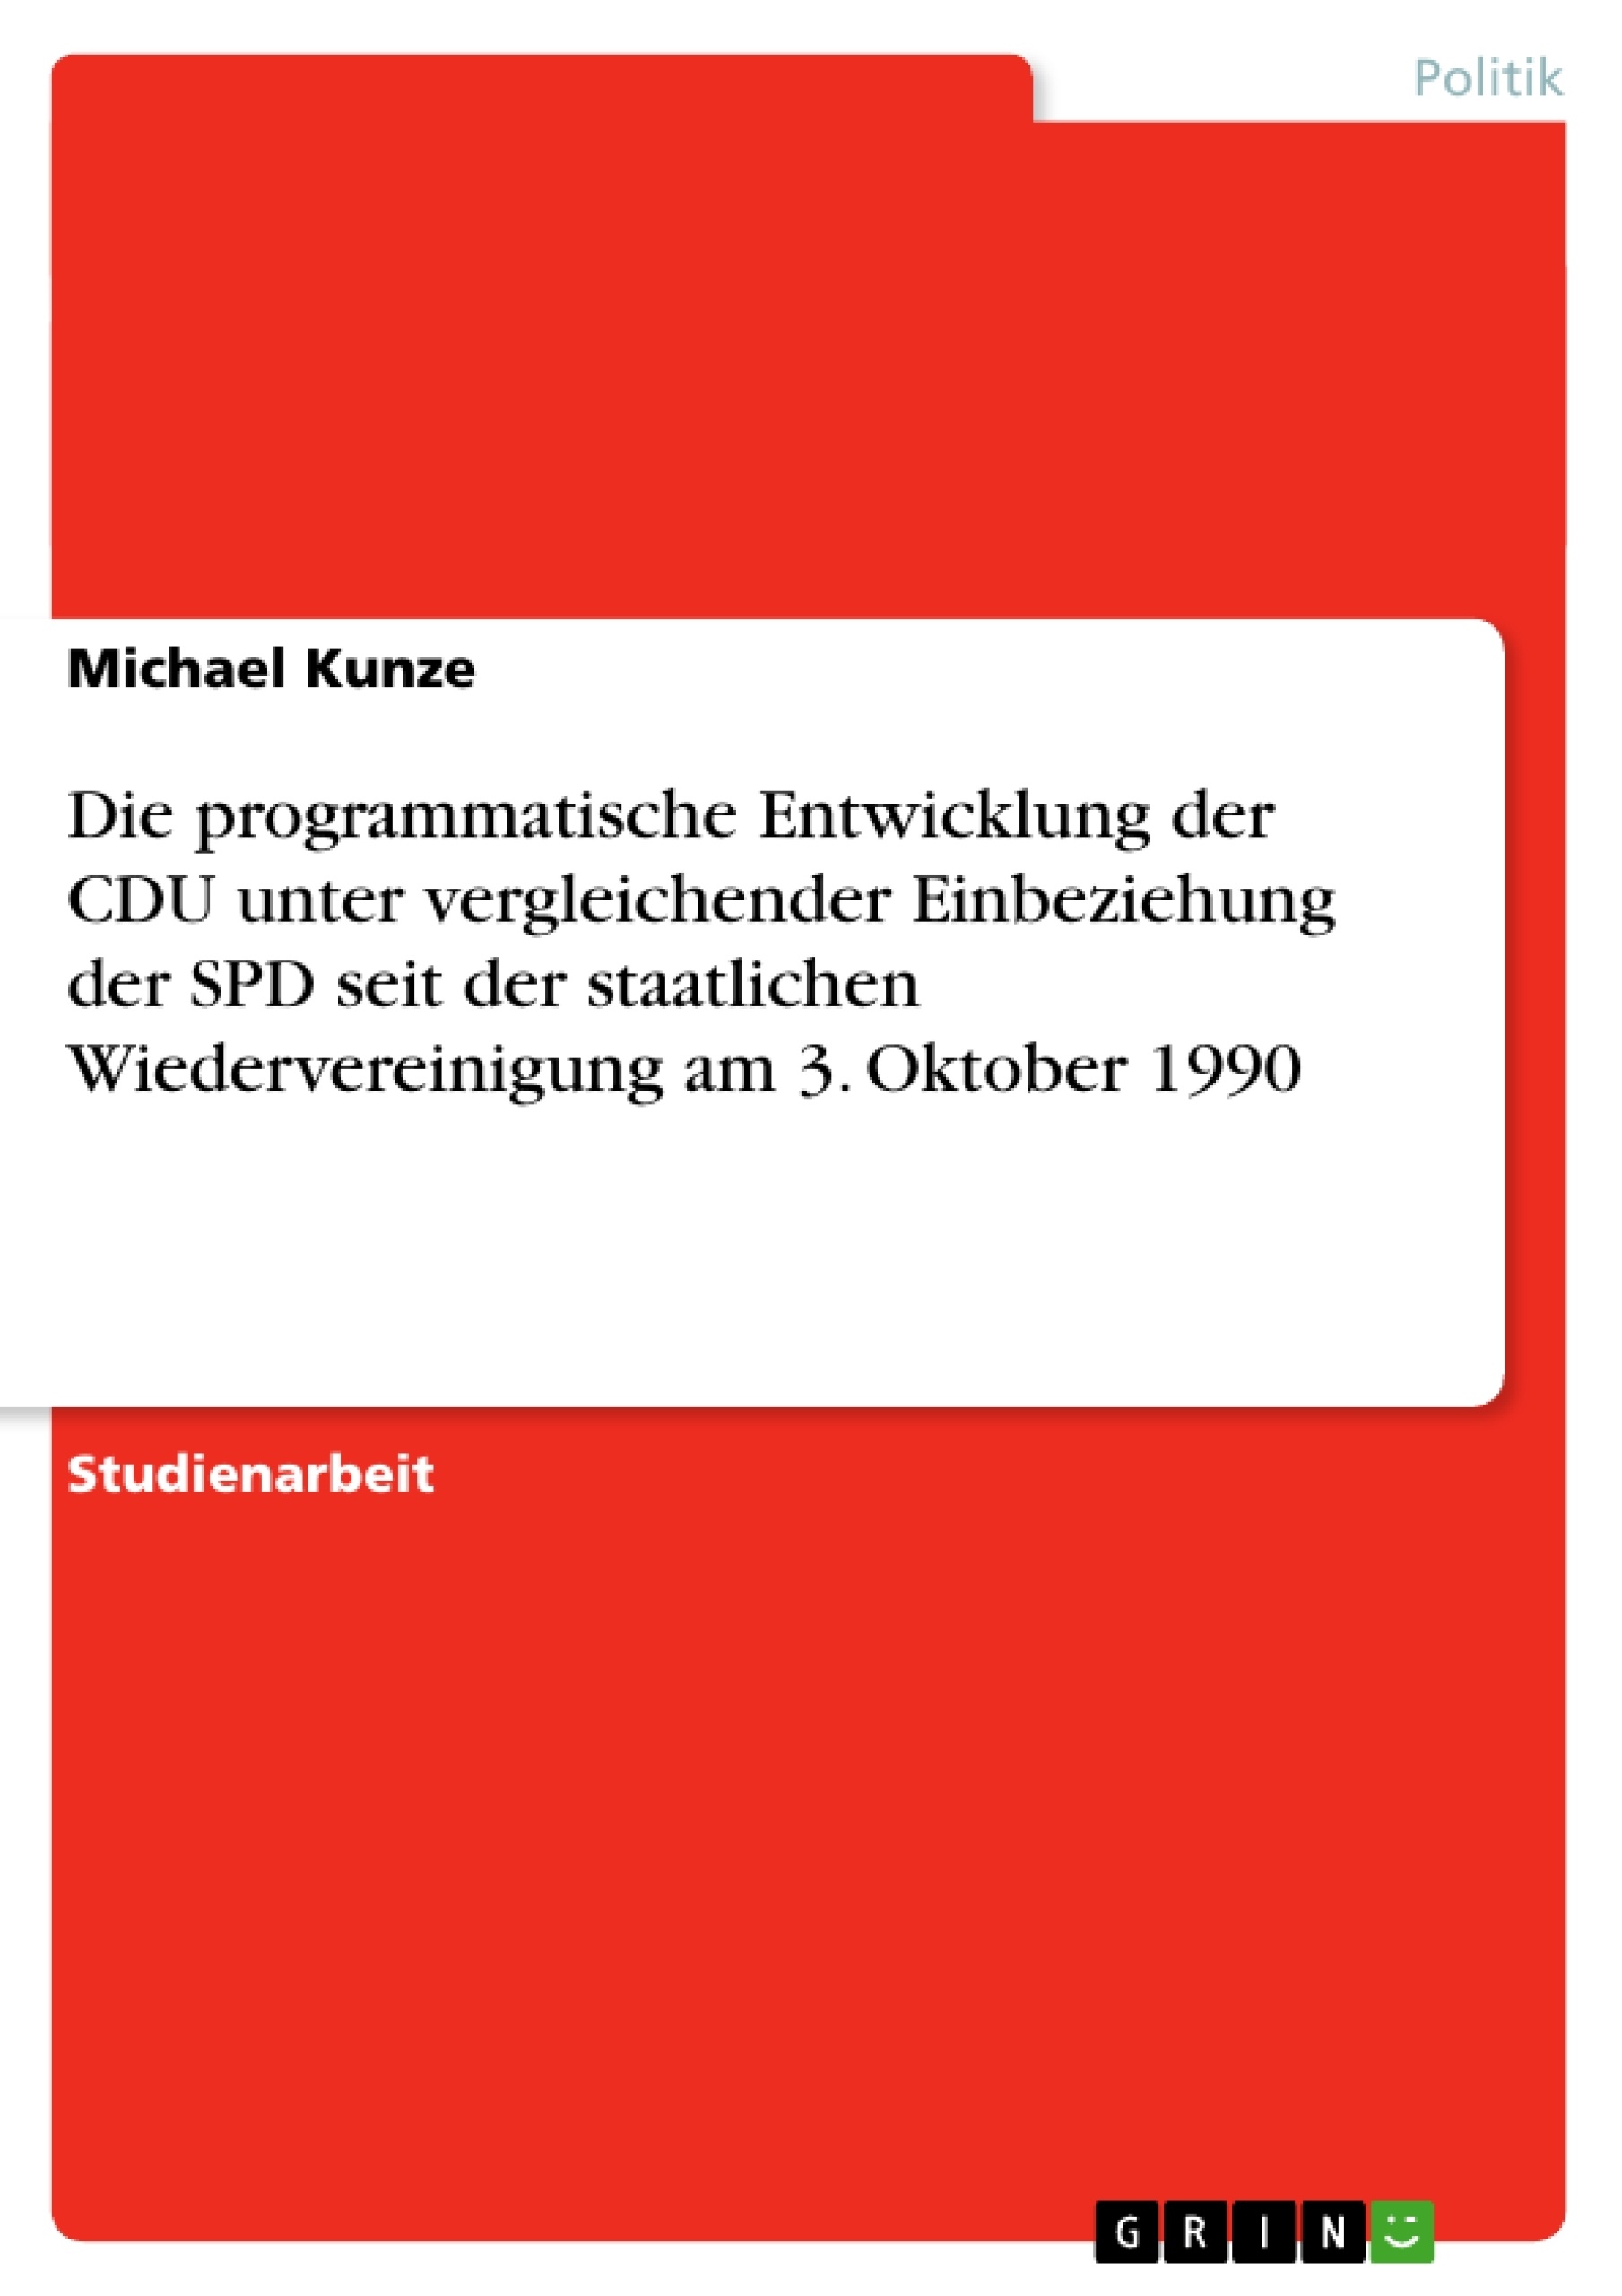 Title: Die programmatische Entwicklung der CDU unter vergleichender Einbeziehung der SPD seit der staatlichen Wiedervereinigung am 3. Oktober 1990